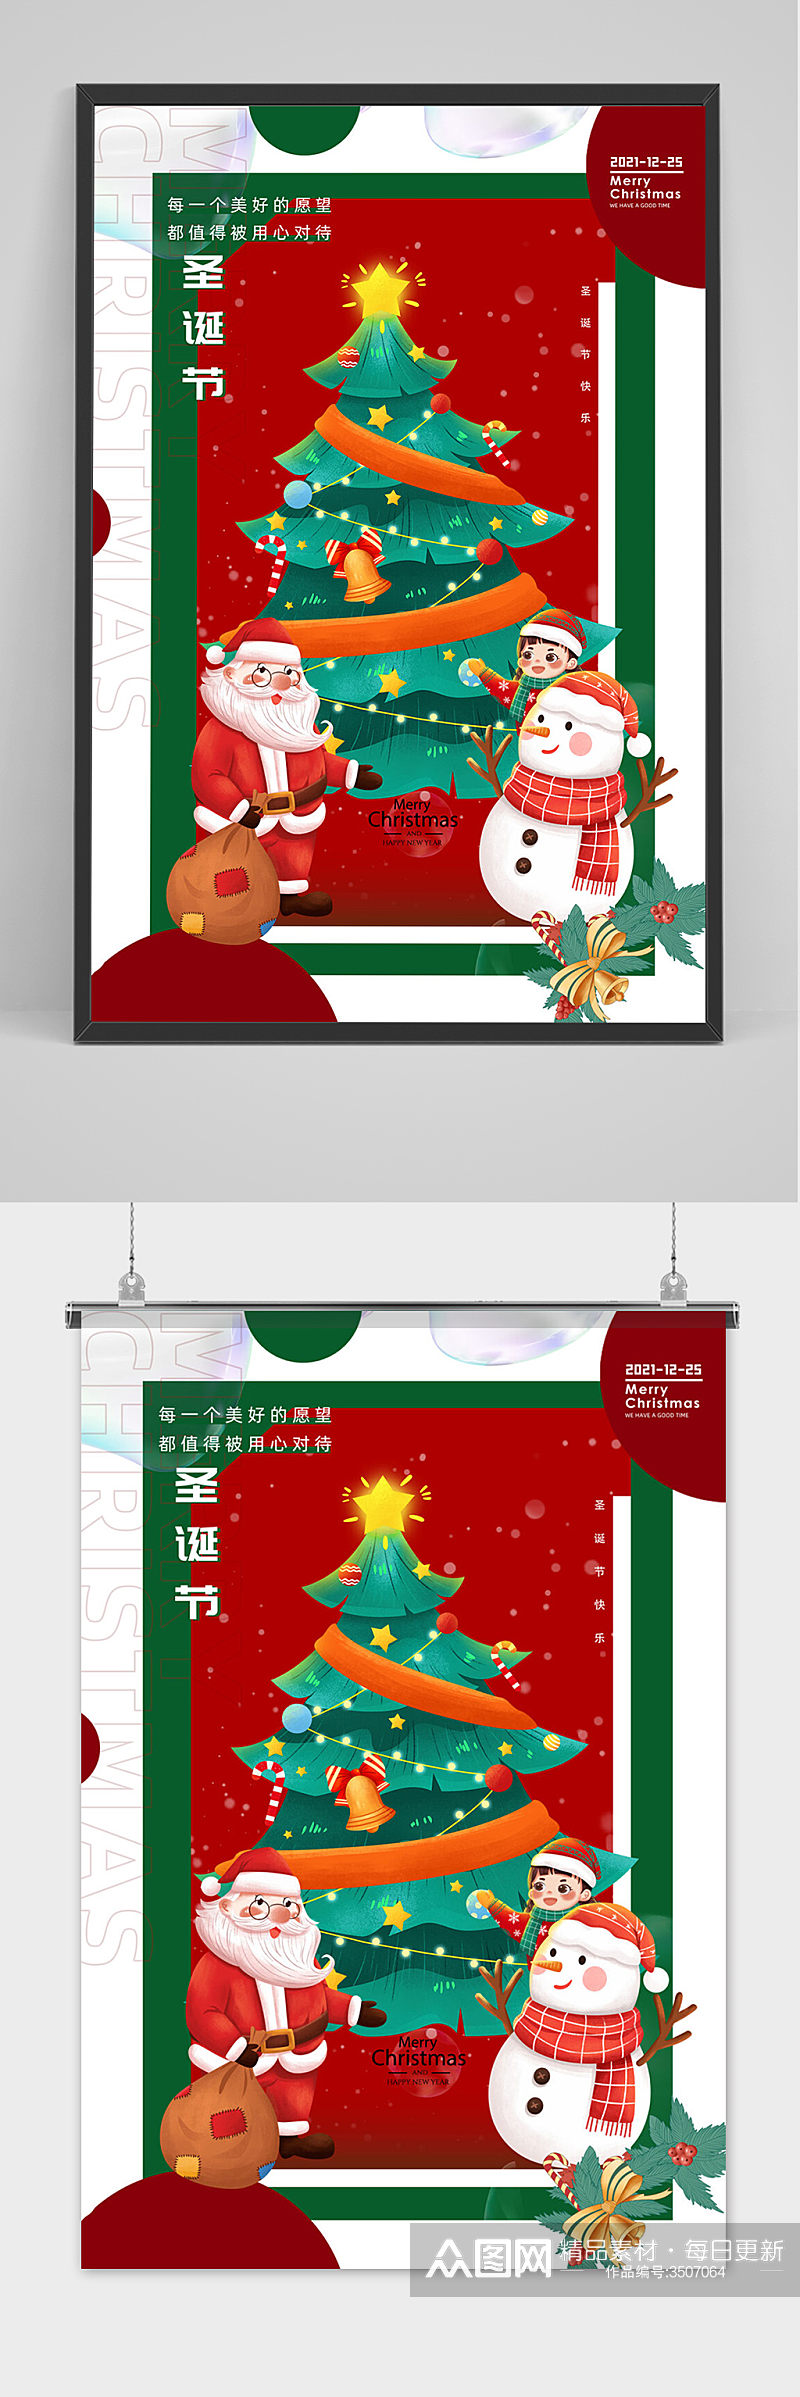 大气卡通圣诞节节日海报素材